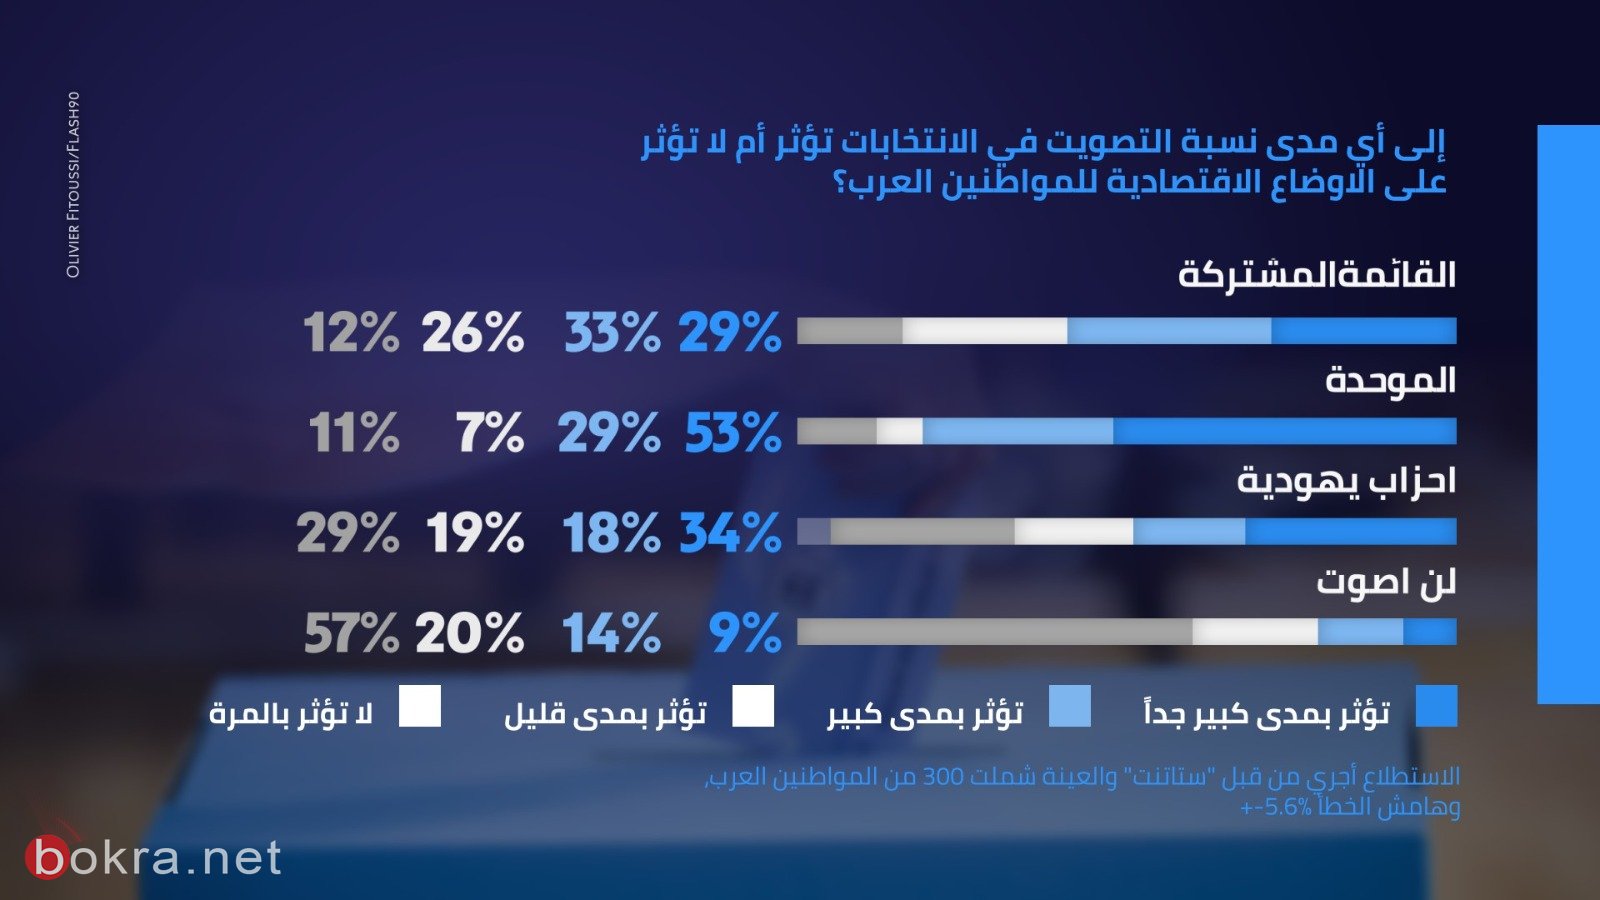 65% من العرب يؤيدون دخول الاحزاب العربية الى الائتلاف الحكومي-8